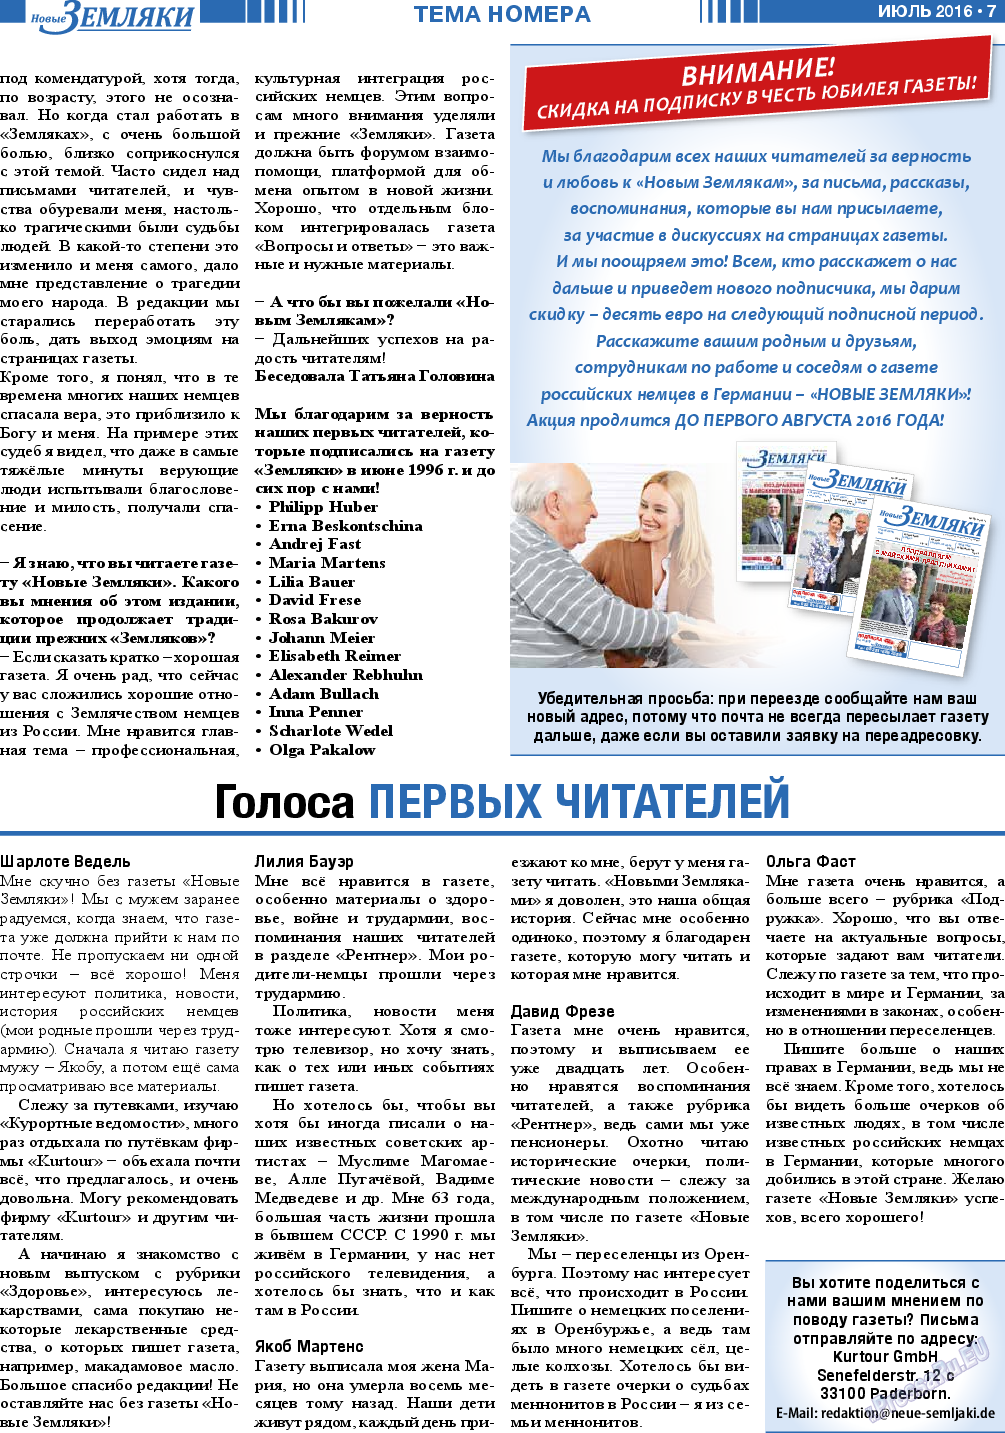 Новые Земляки, газета. 2016 №7 стр.7